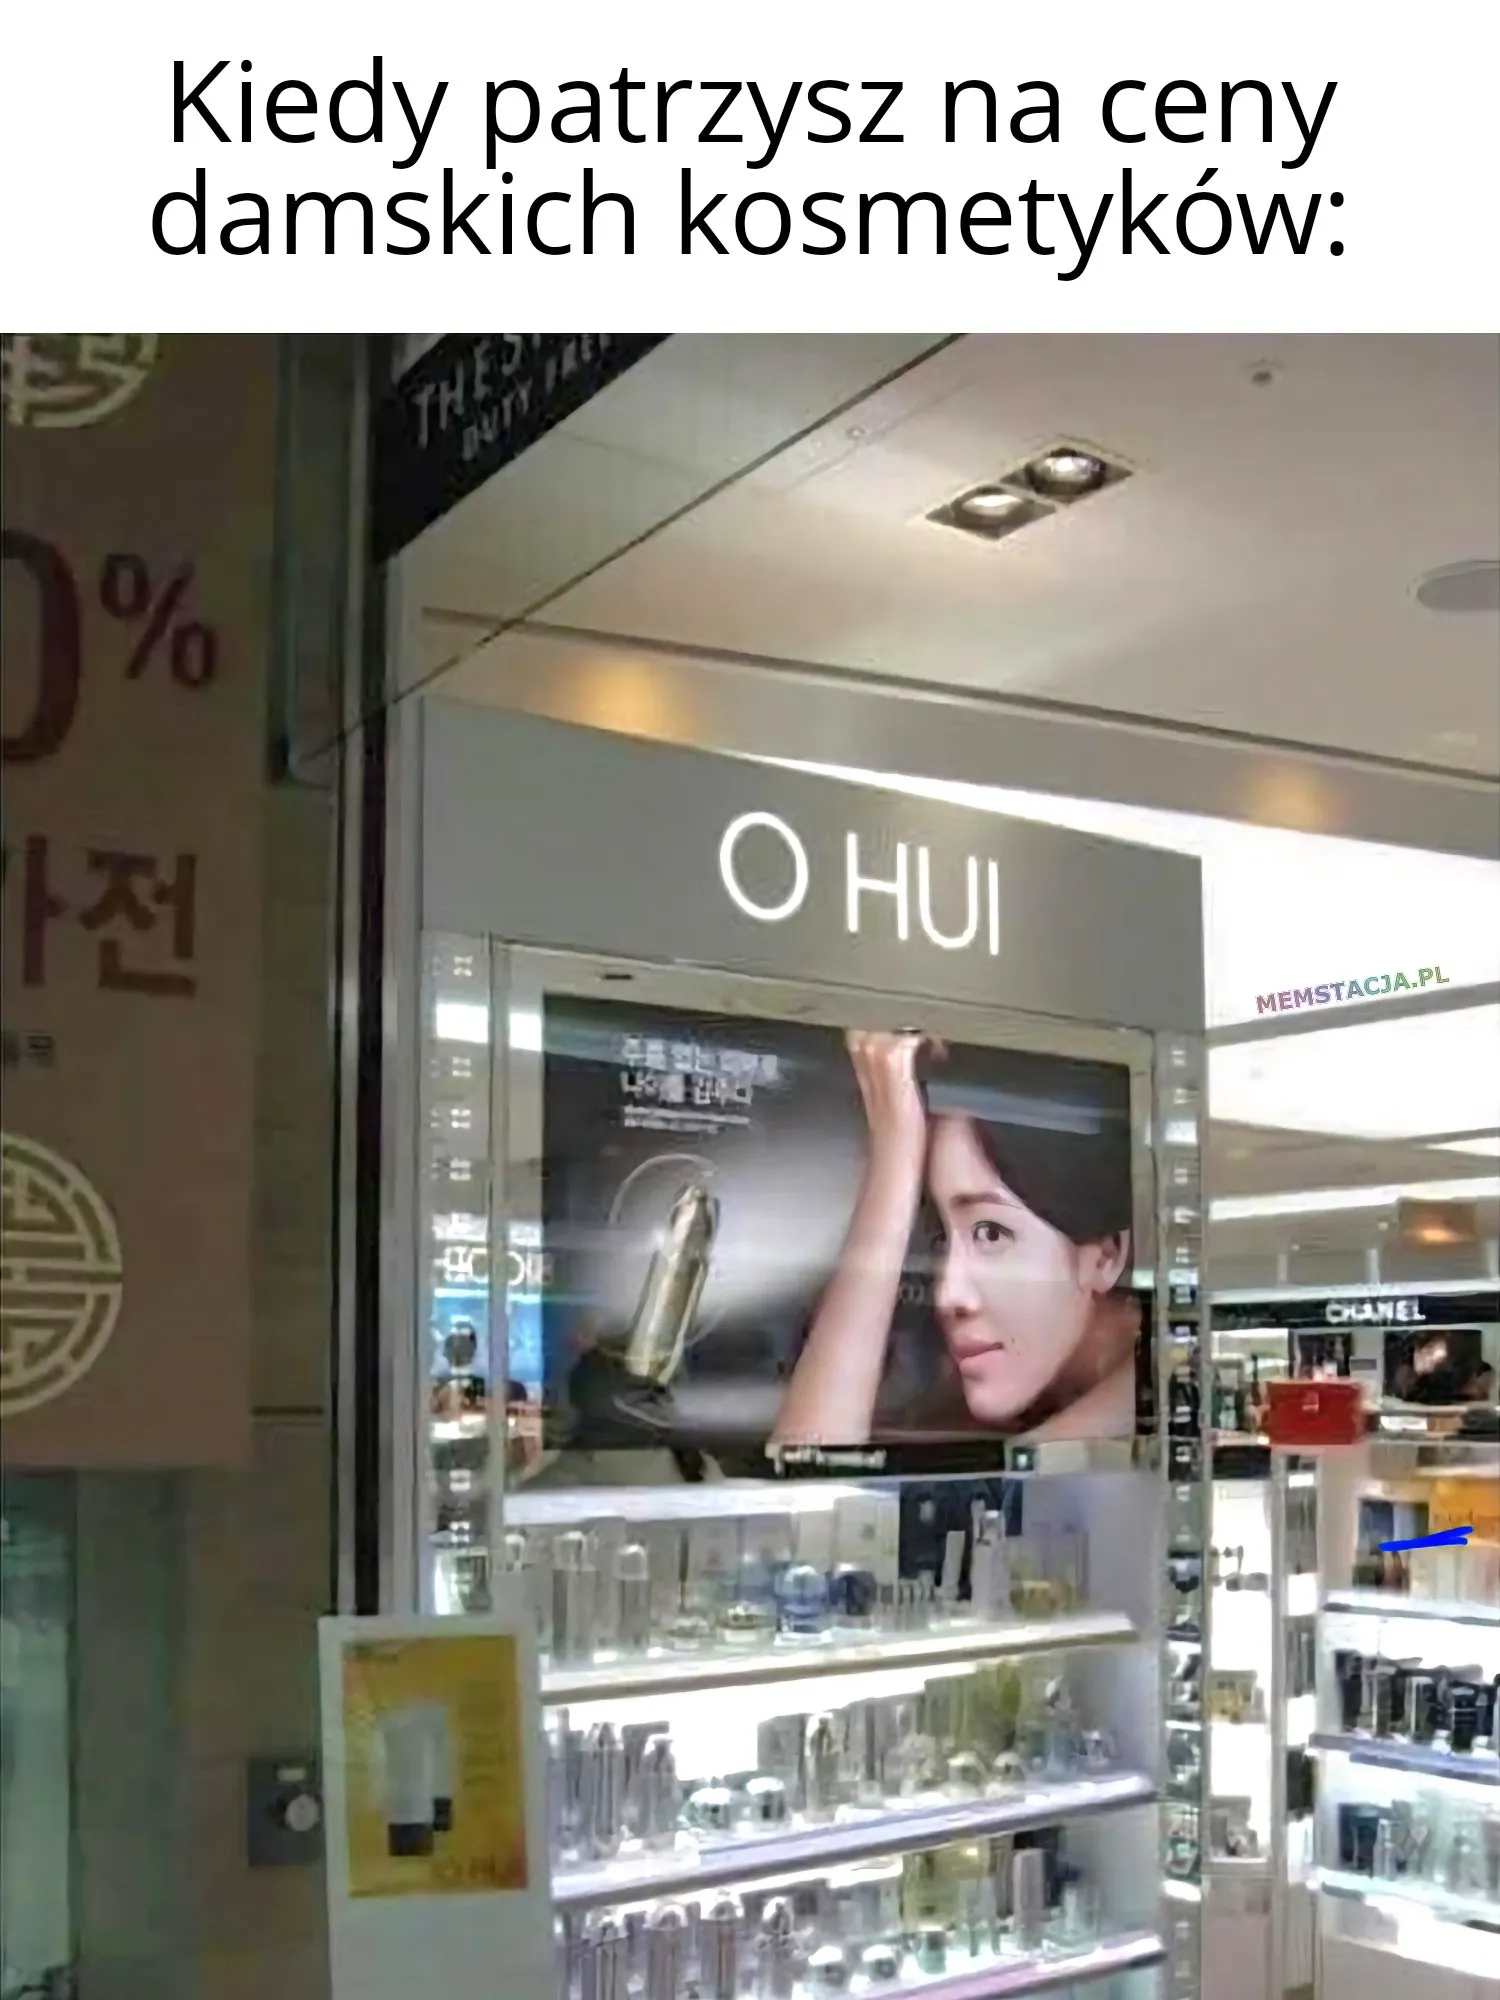 Kiedy patrzysz na ceny damskich kosmetyków: 'Zdjęcie przedstawiający reklamę marki "O HUI"'